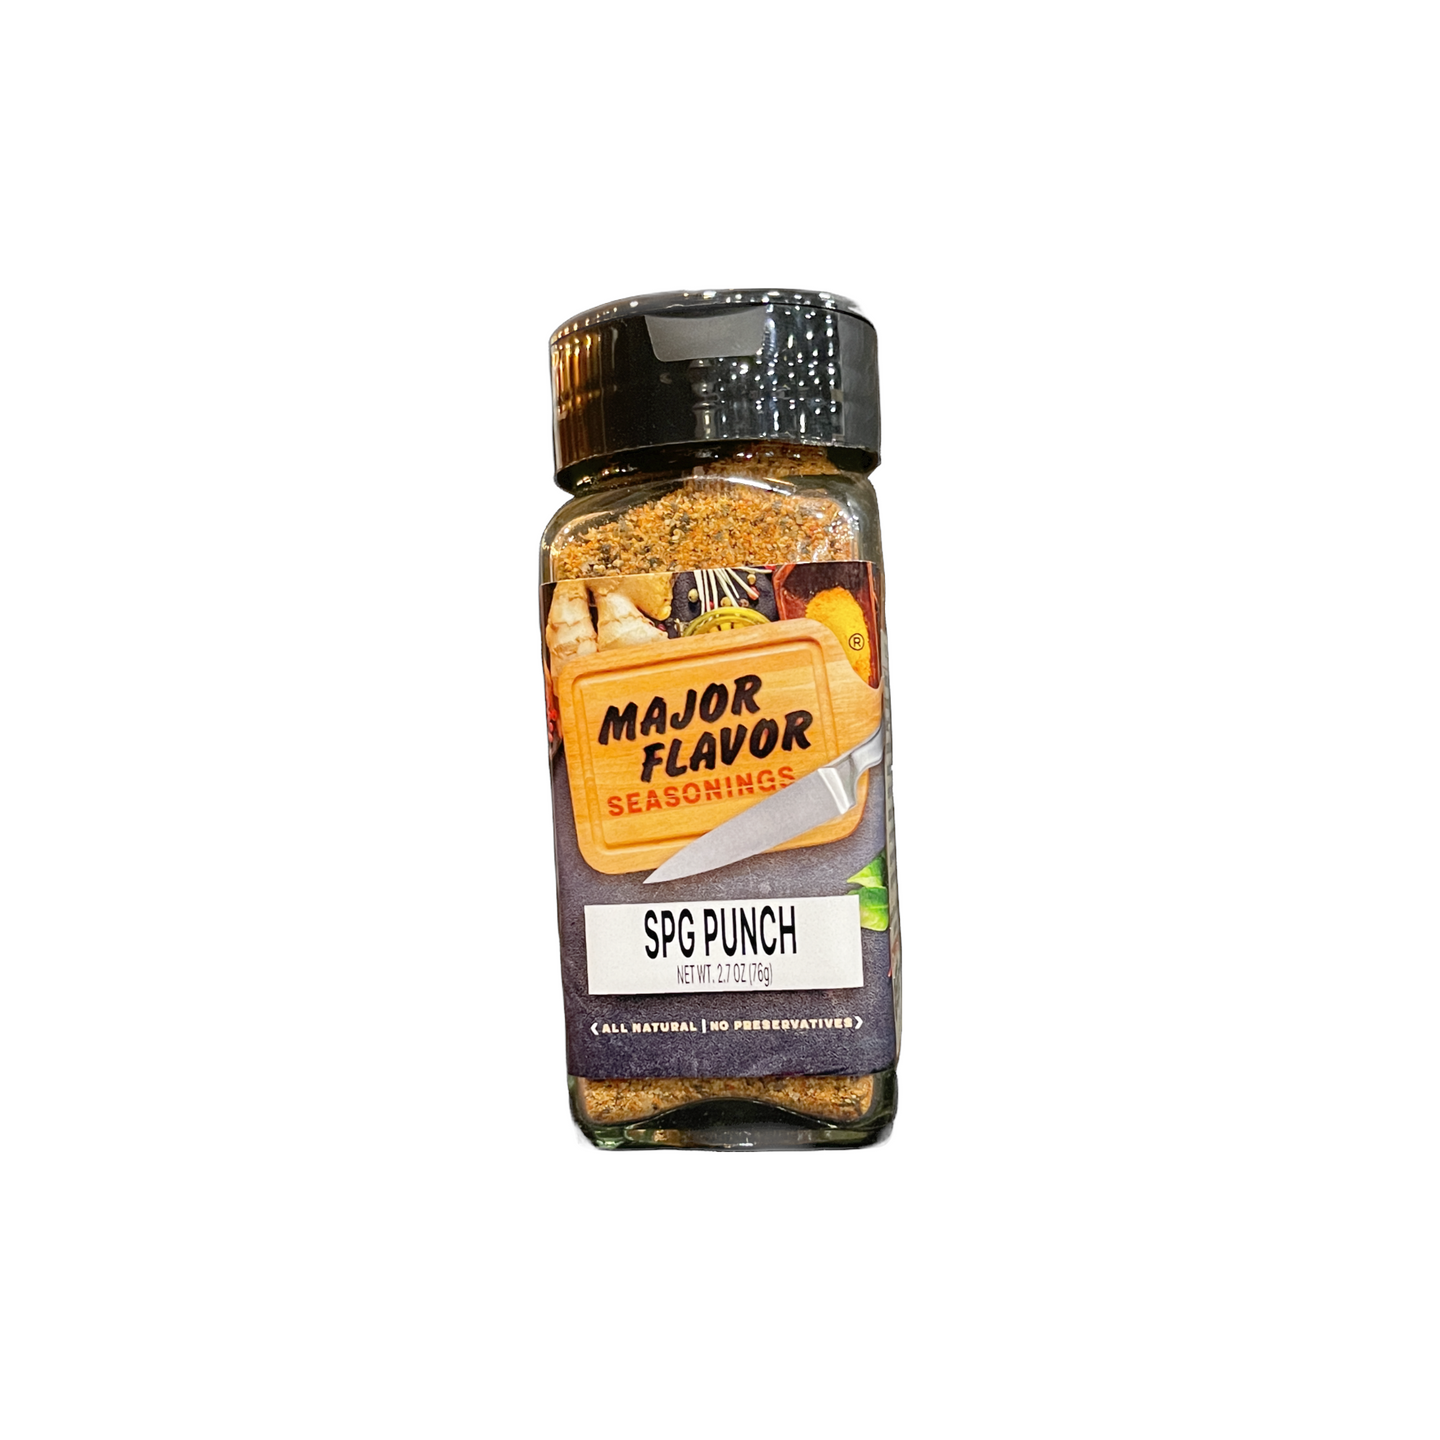 SPG PUNCH – Major Flavor Seasonings LLC